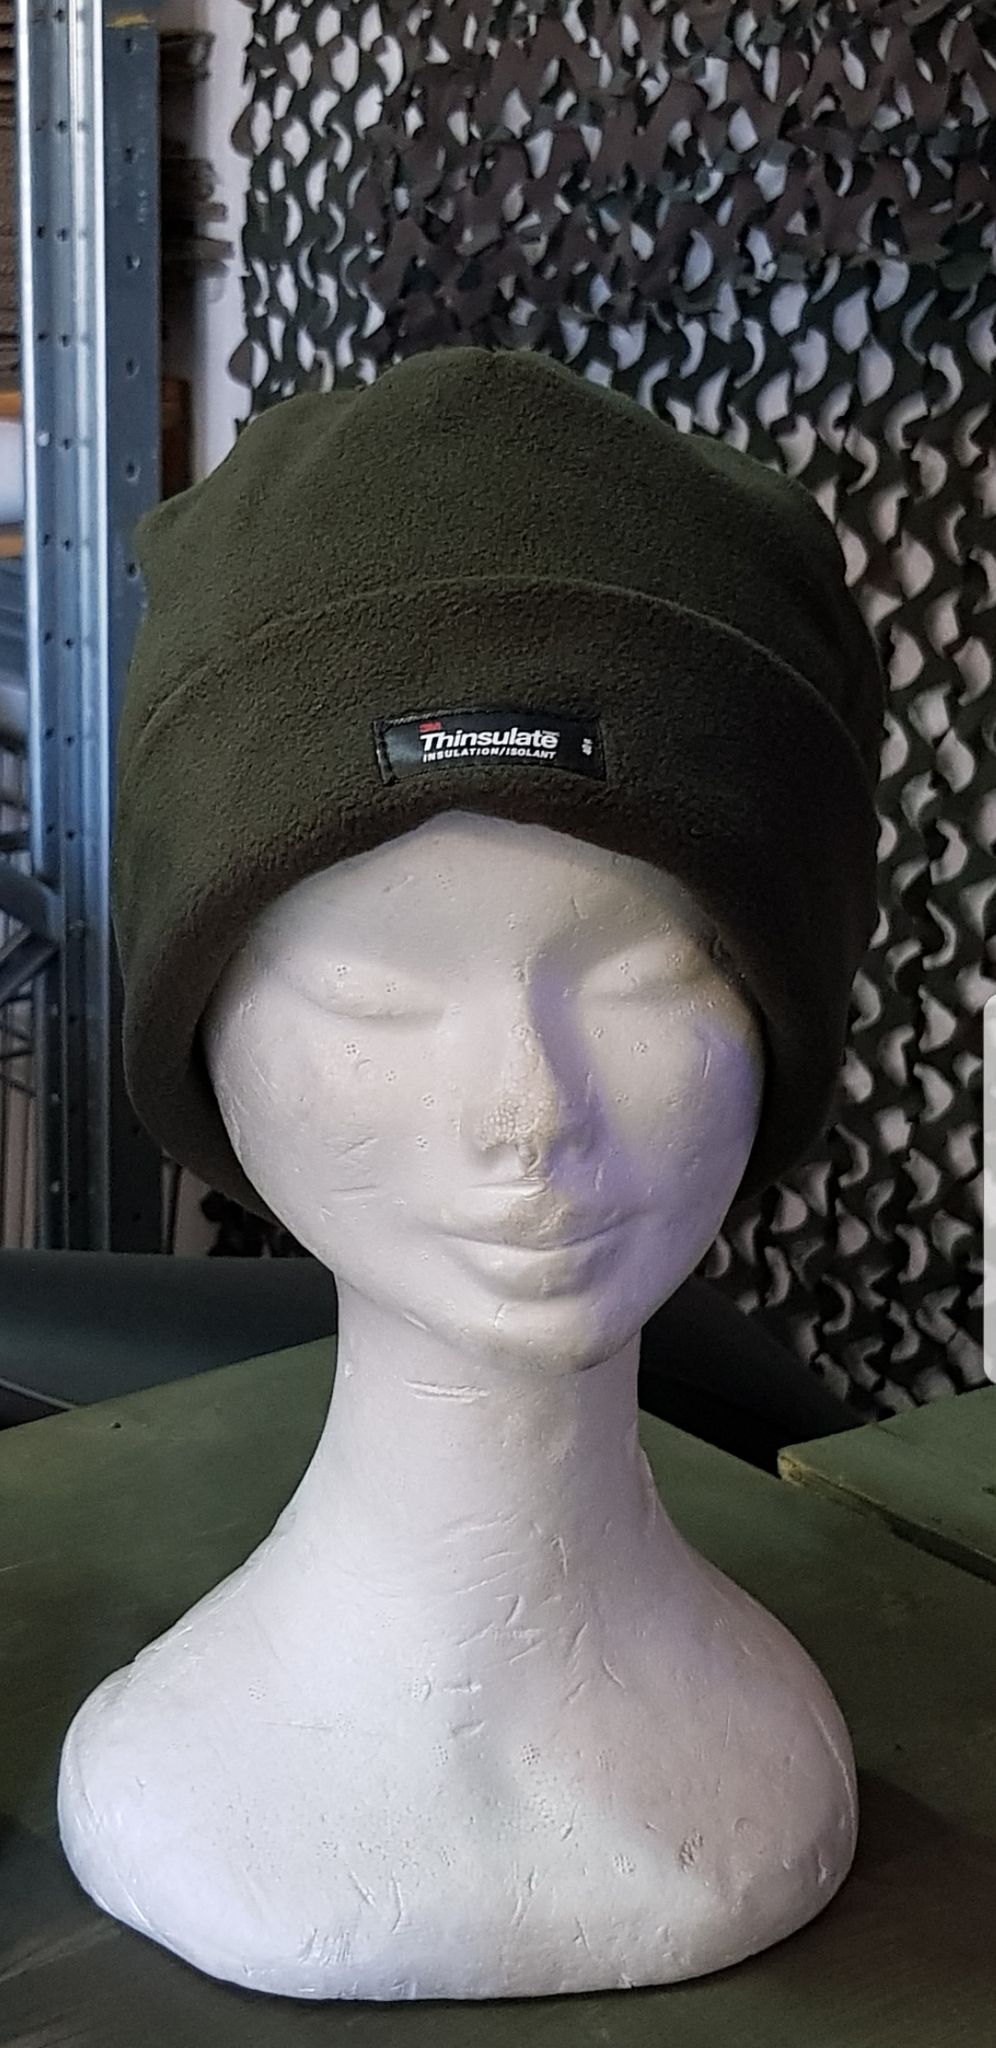 Cappello Thinsulate in Pile U10853 Verde